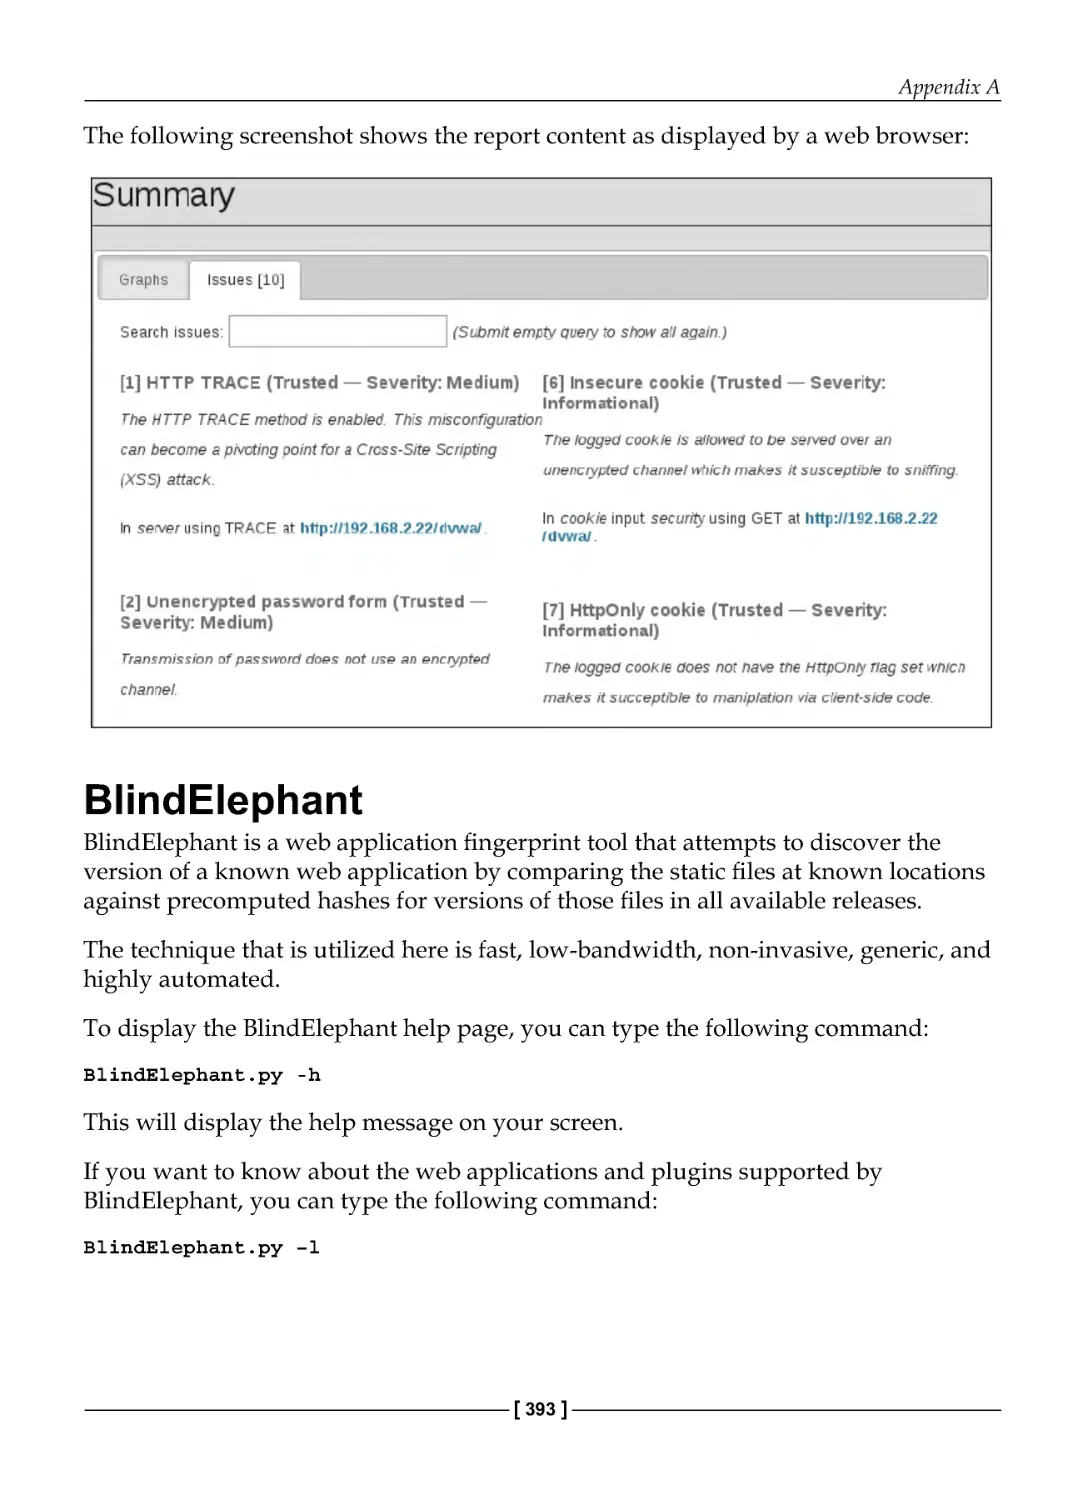 BlindElephant